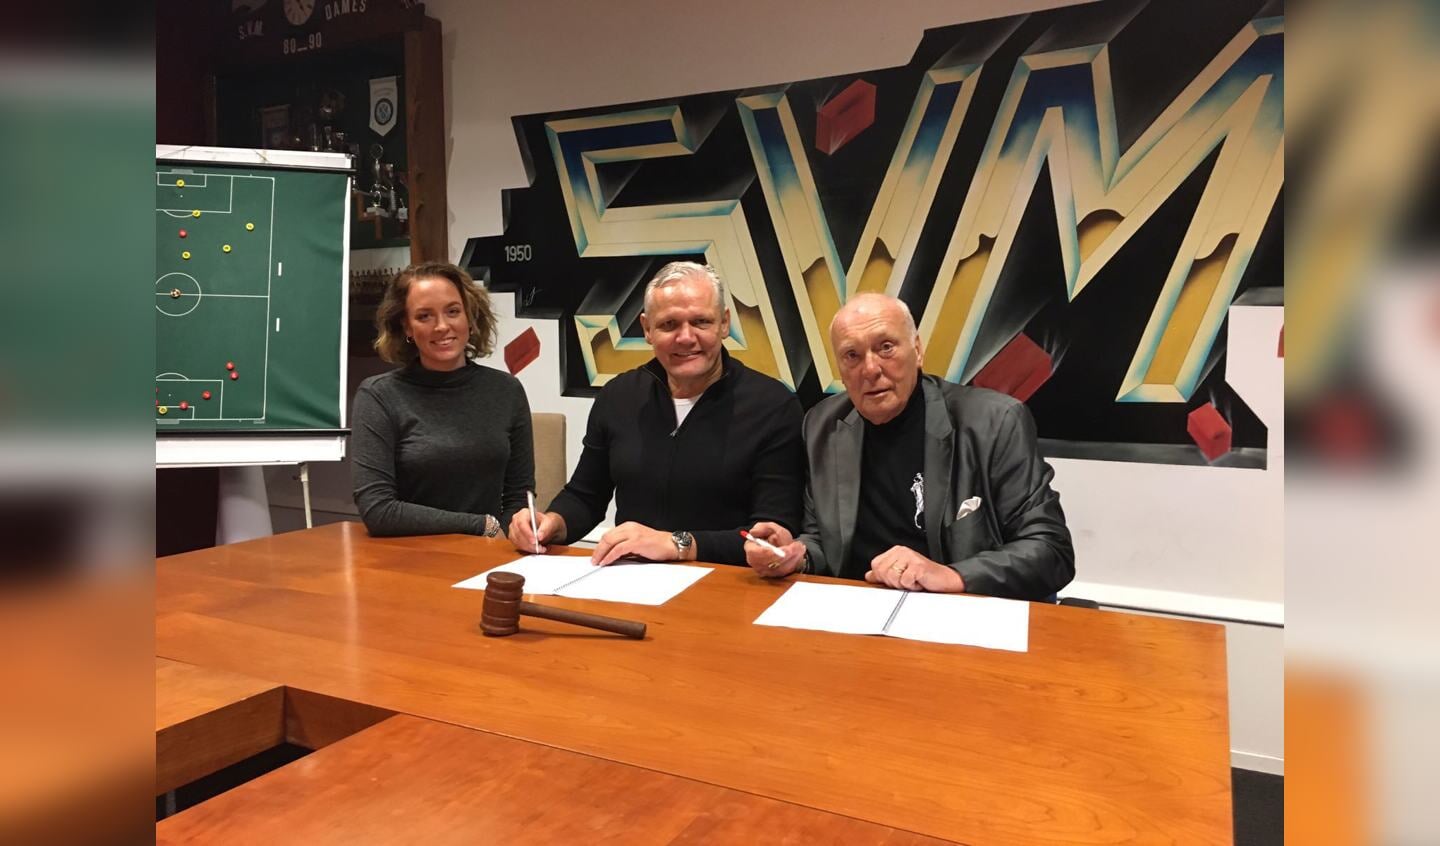 MAC³PARK marketingmanager Lisanne Kesting en initiatiefnemer Meine Breemhaar, tekenen samen met de SVM voorzitter Frans van der Tol de sponsorovereenkomst.